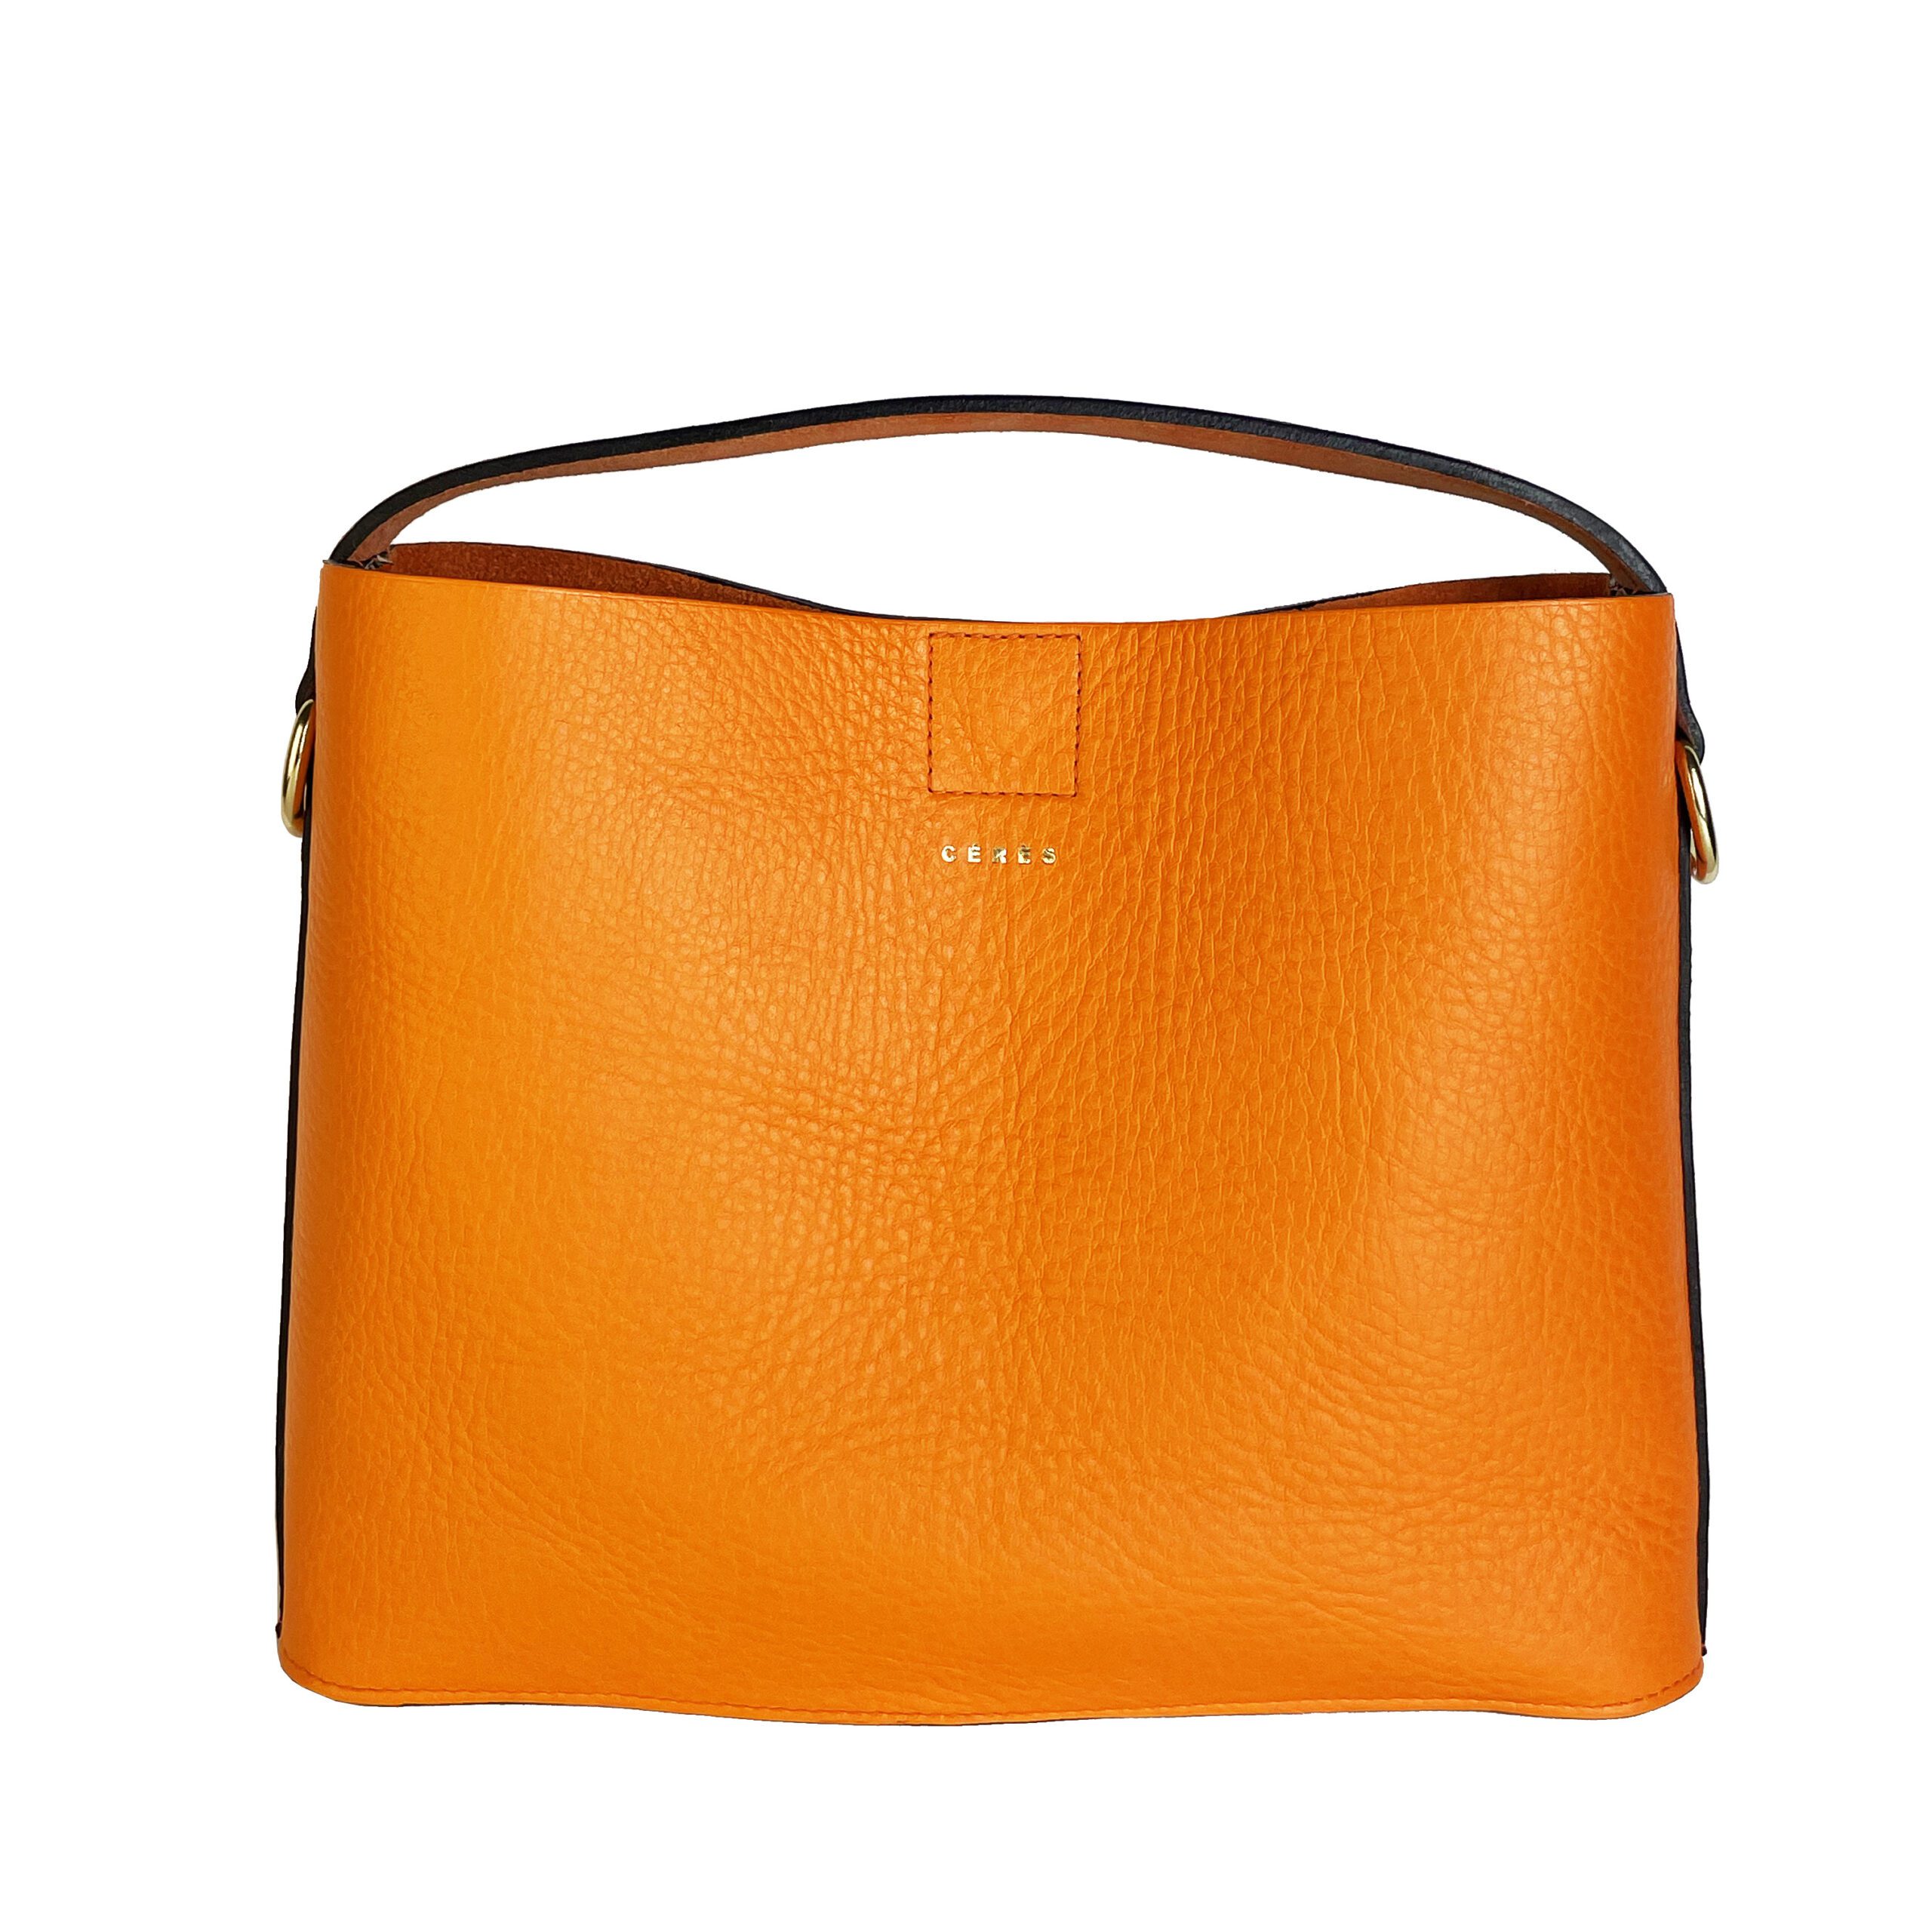 #Octave sac en cuir orange pleine fleur avec poignée et bandoulière amovible